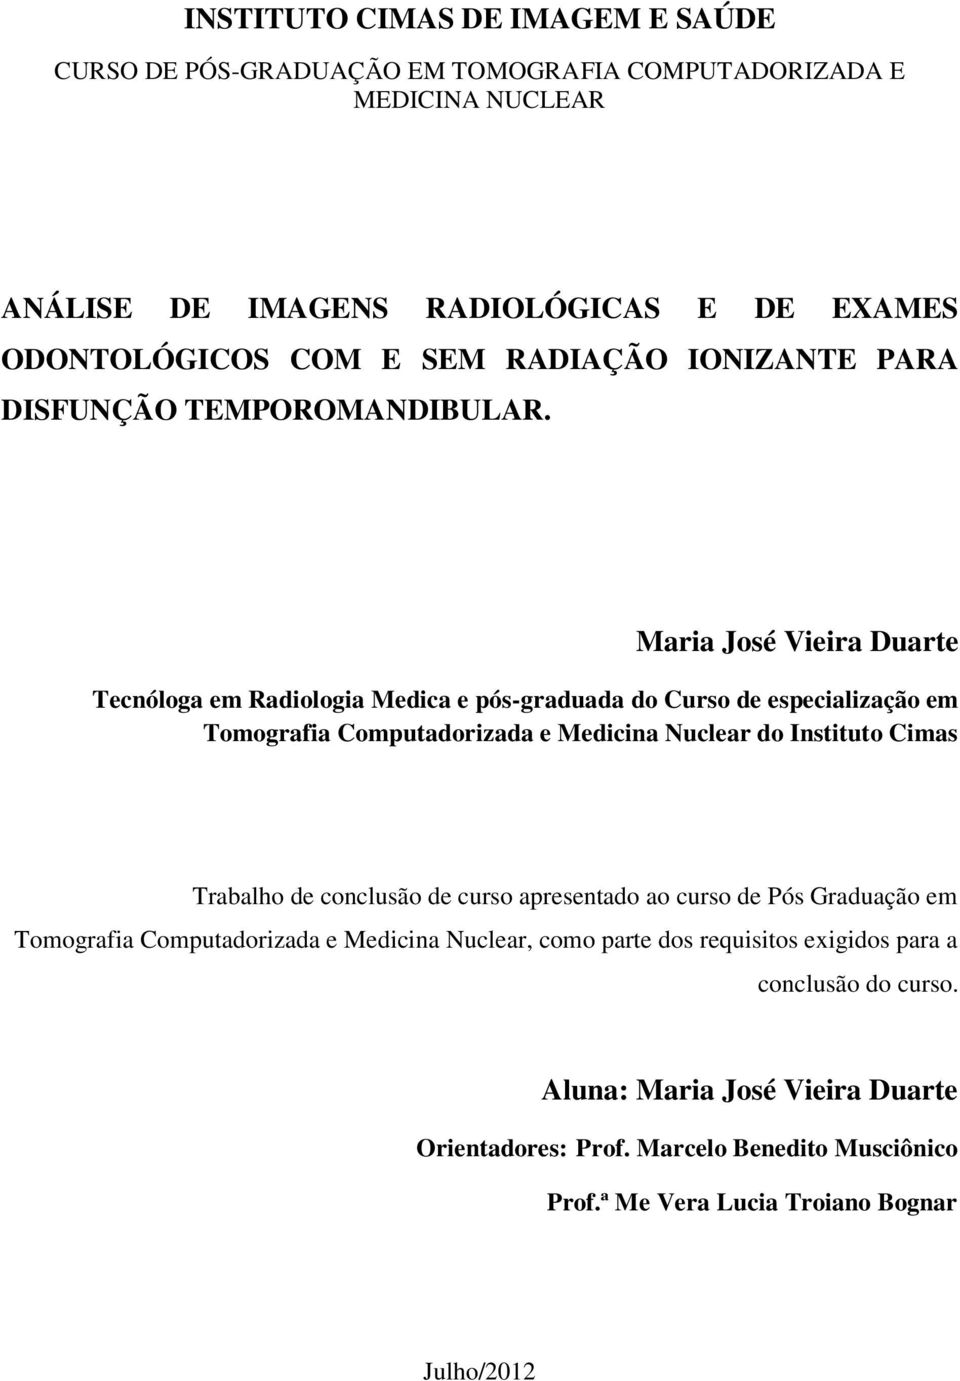 Maria José Vieira Duarte Tecnóloga em Radiologia Medica e pós-graduada do Curso de especialização em Tomografia Computadorizada e Medicina Nuclear do Instituto Cimas Trabalho